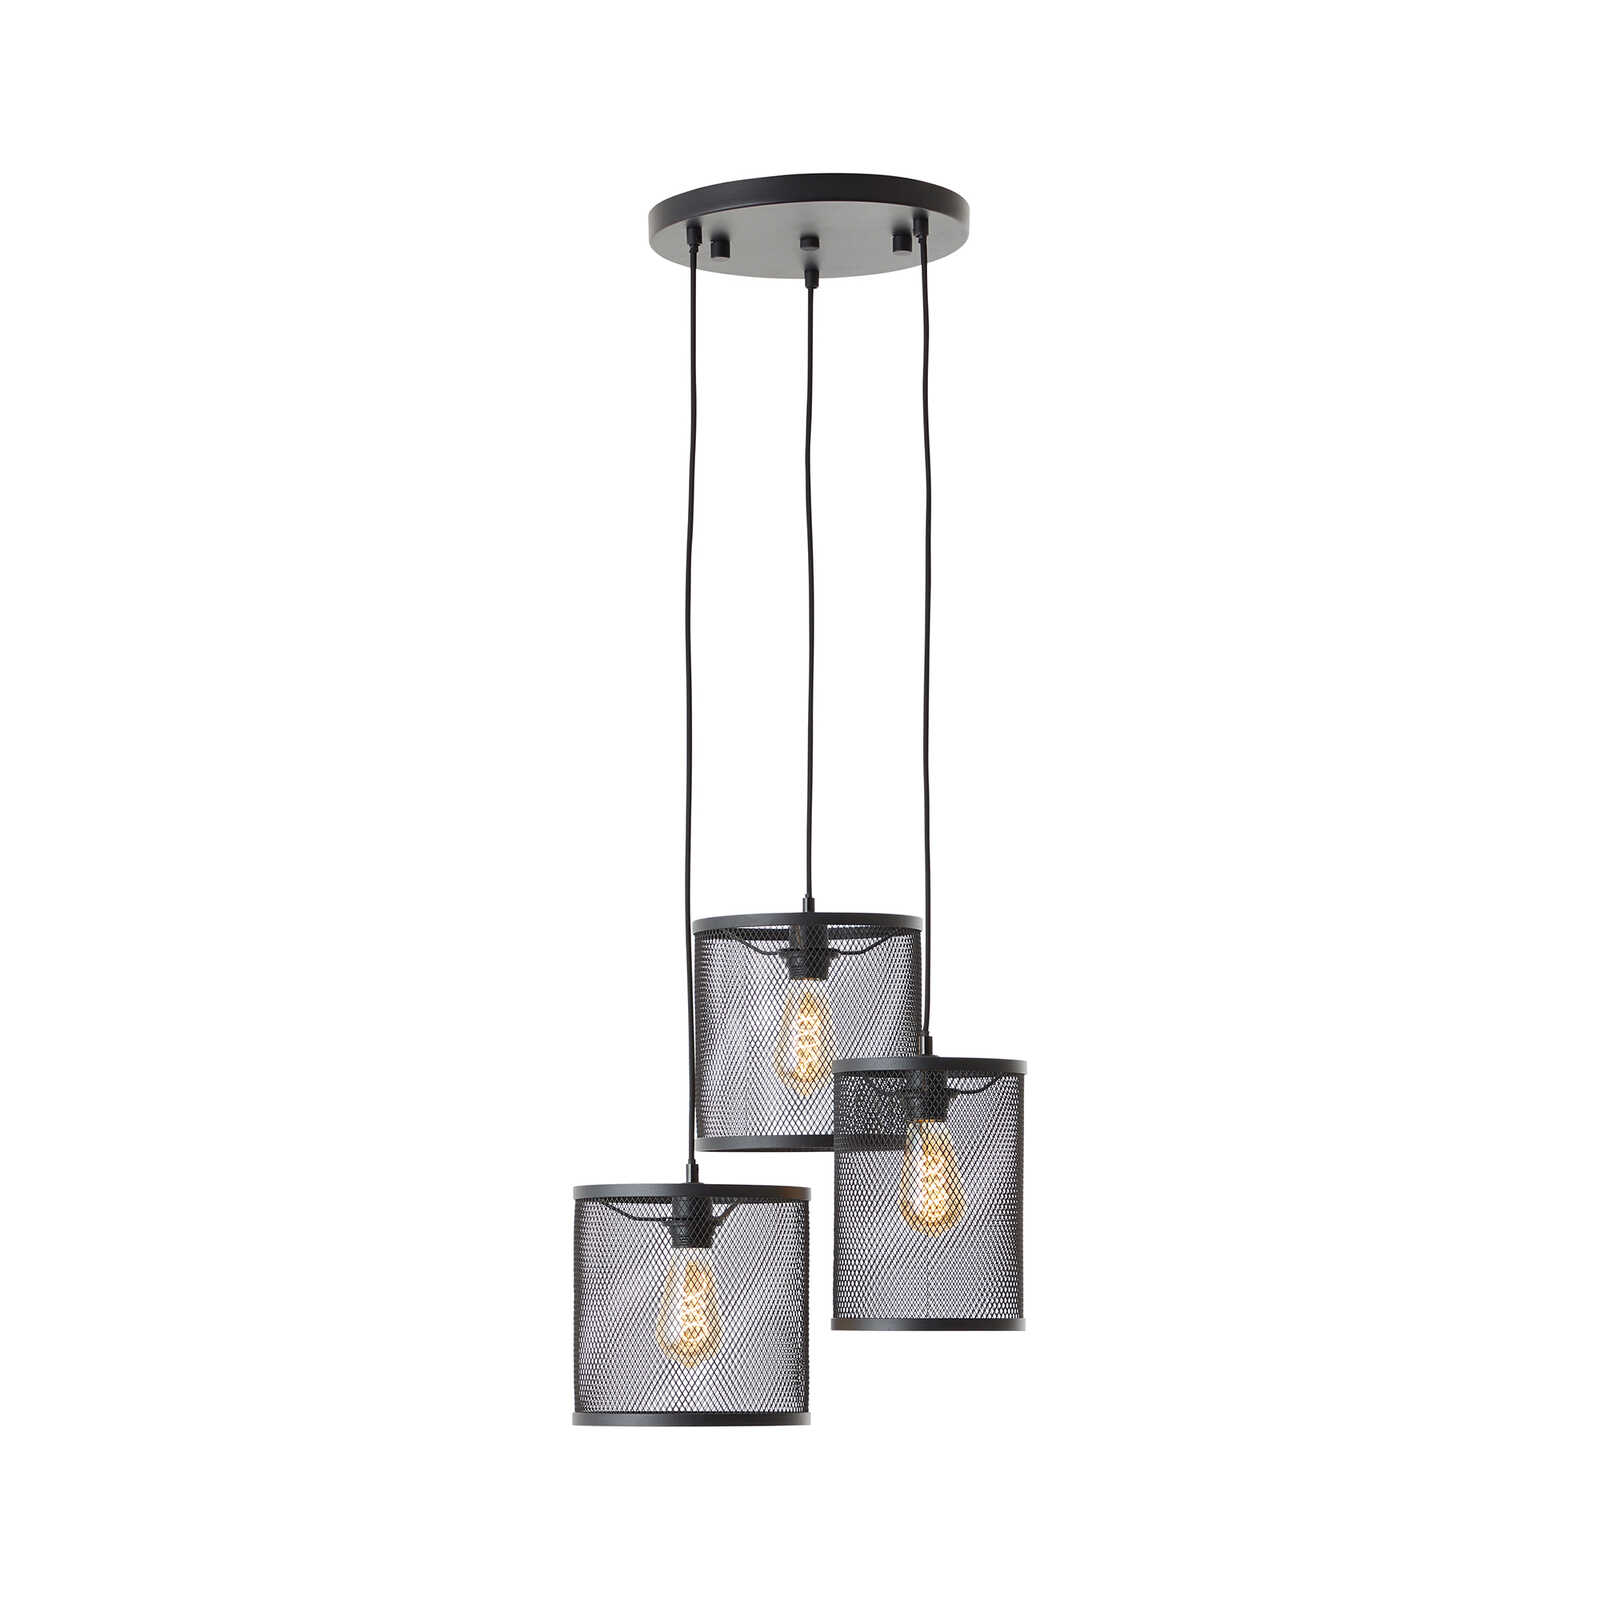 Metalen hanglamp - Levi 4 - Goud
